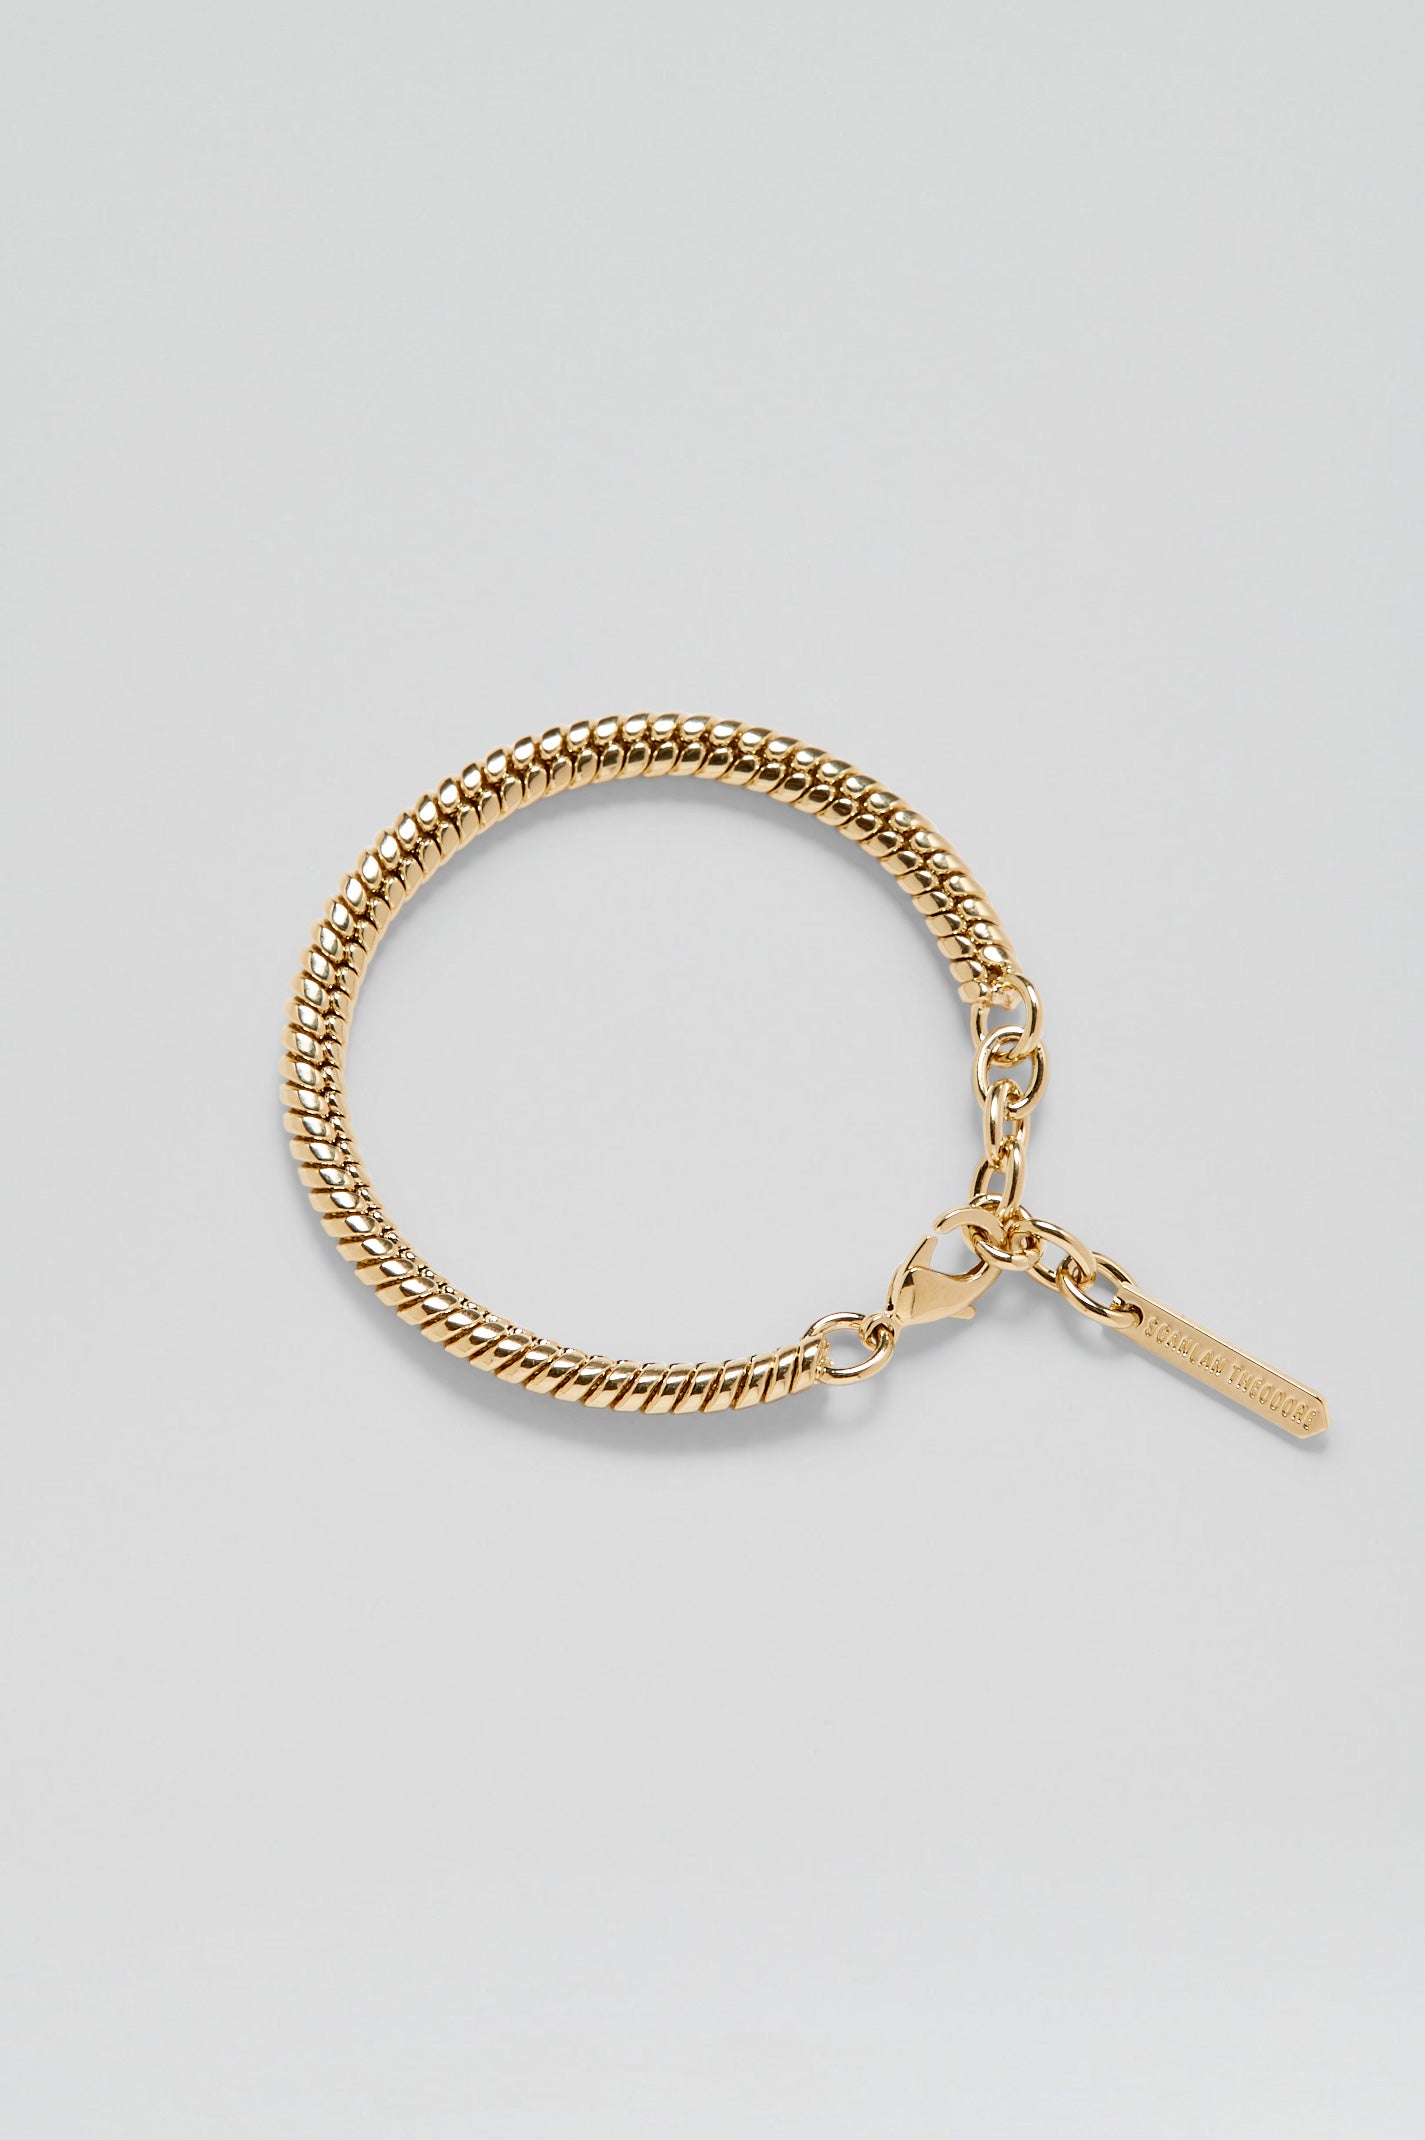 Gold and White Chain Bracelet – Brandy Melville Australia